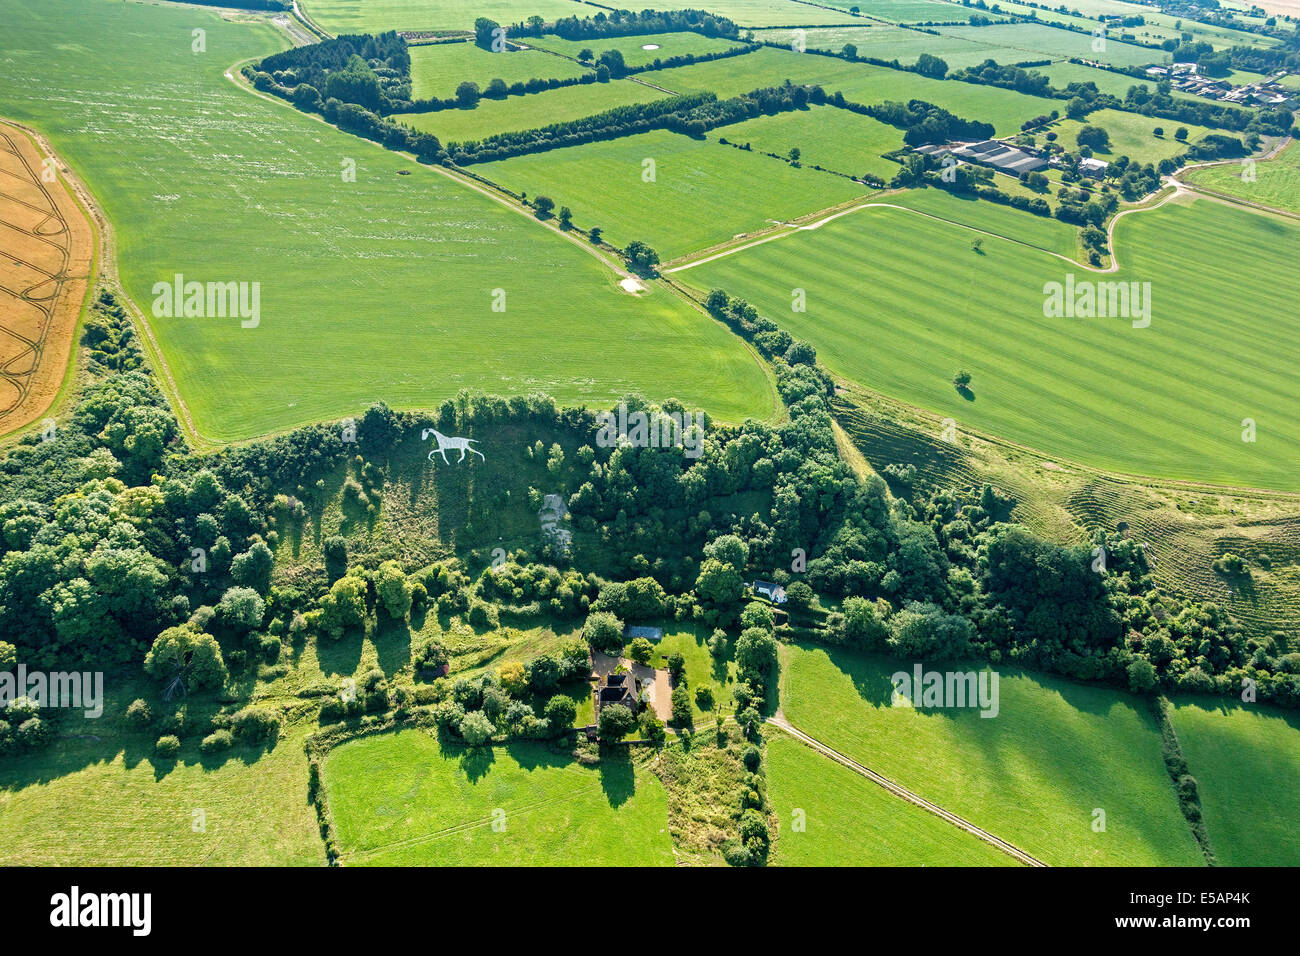 Vista aerea del Cavallo Bianco in grandi città o ampia Hinton, nr Royal Wootton Bassett, a sud di Swindon, Wiltshire, Regno Unito. JMH6172 Foto Stock